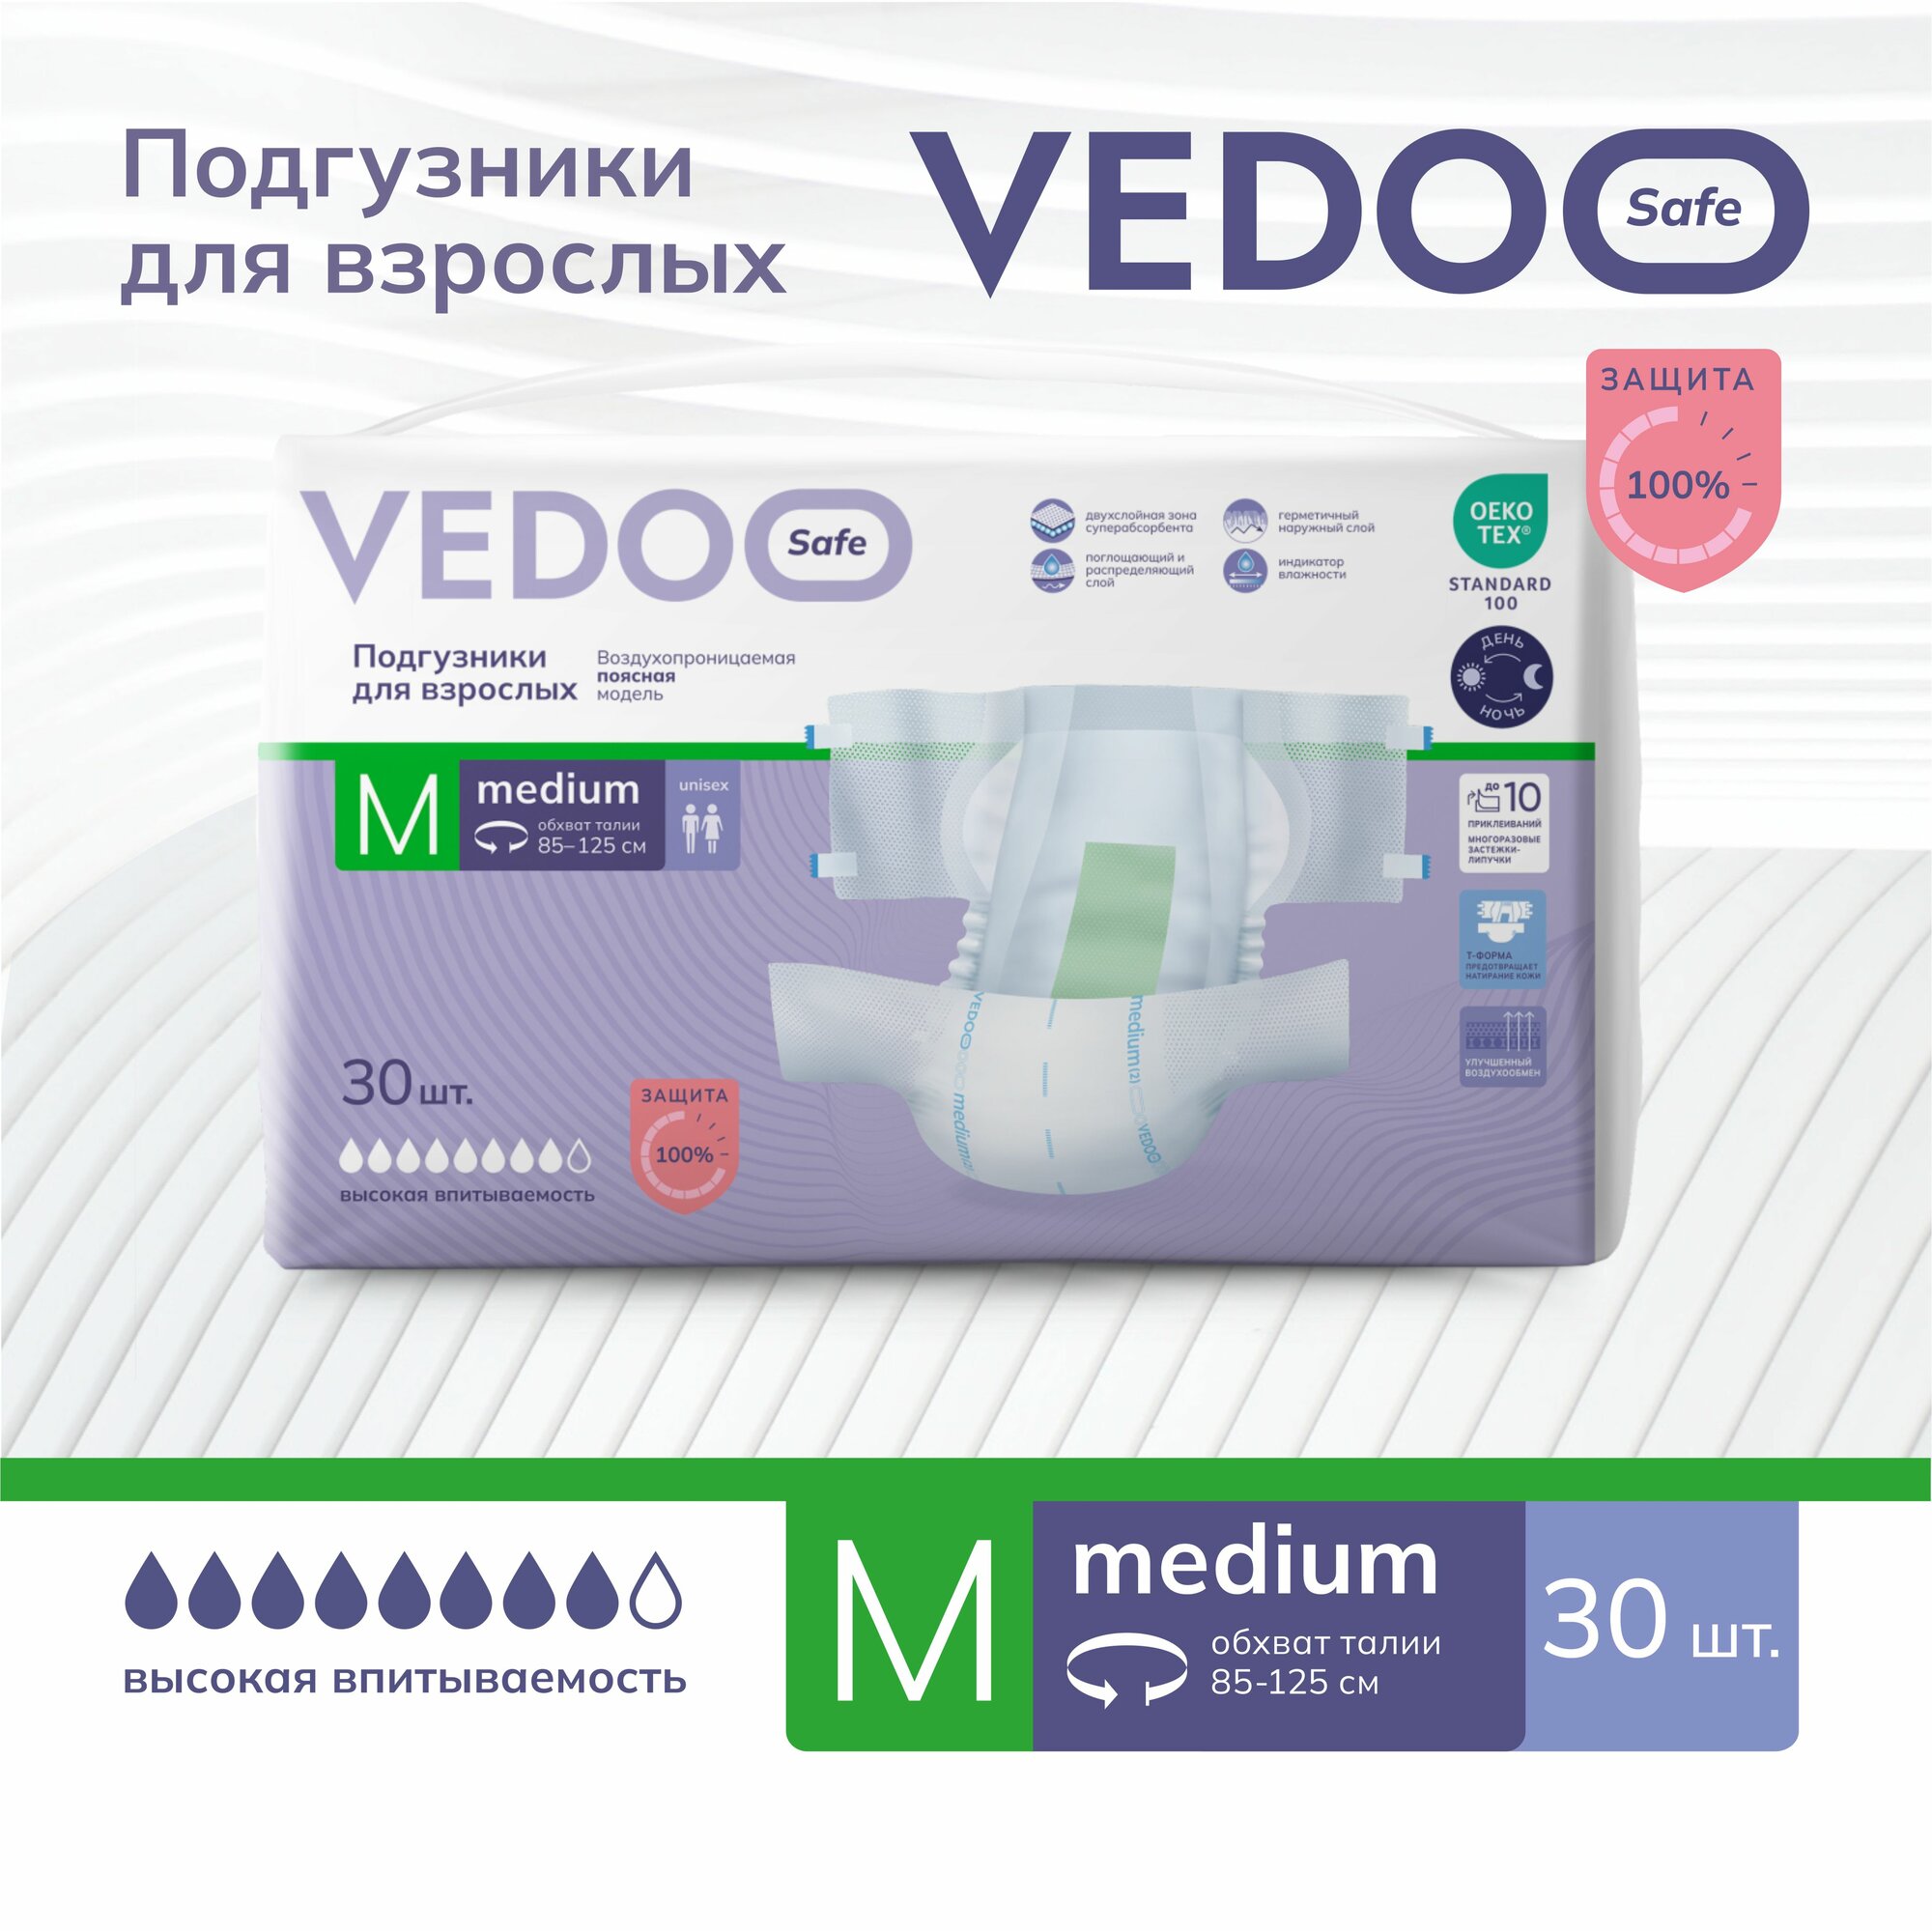 Подгузники для взрослых VEDOO Safe, размер M, 30 штук, для средней и тяжелой степени недержания, одноразовые дышащие впитывающие памперсы с индикатором влаги для лежачих больных, ночные (дневные)